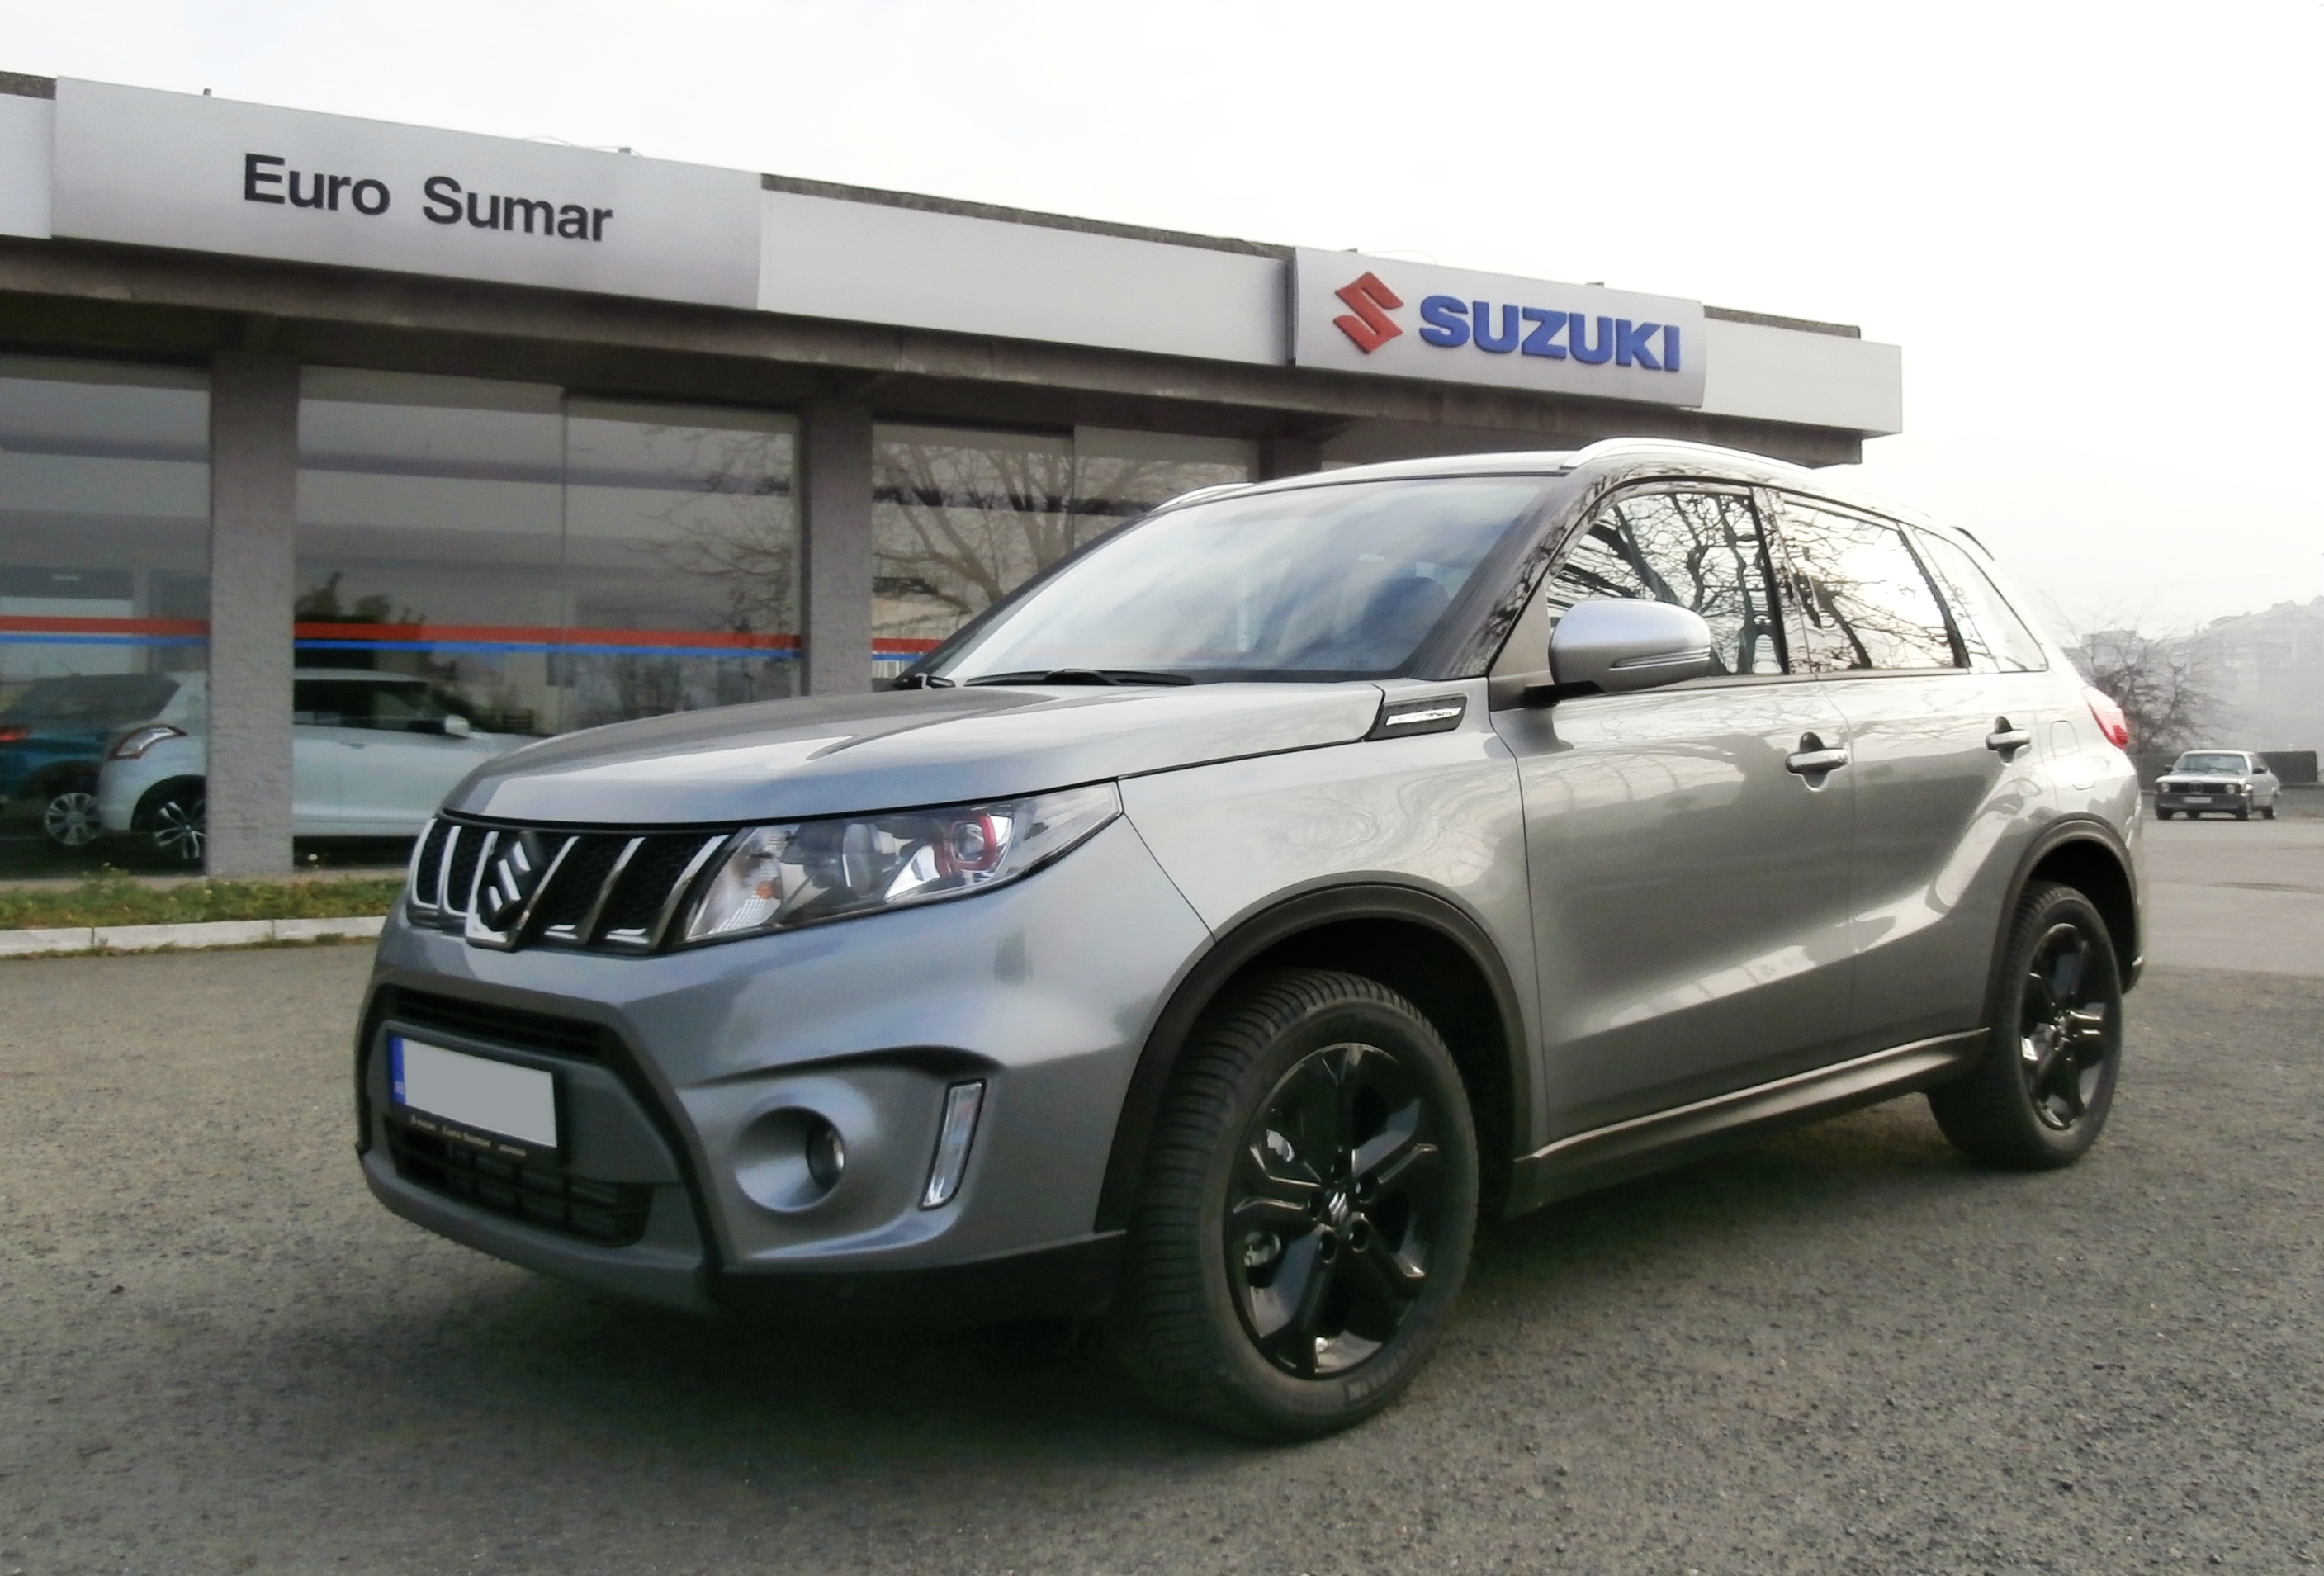 Prodaja Suzuki automobila u Srbiji veća za petinu